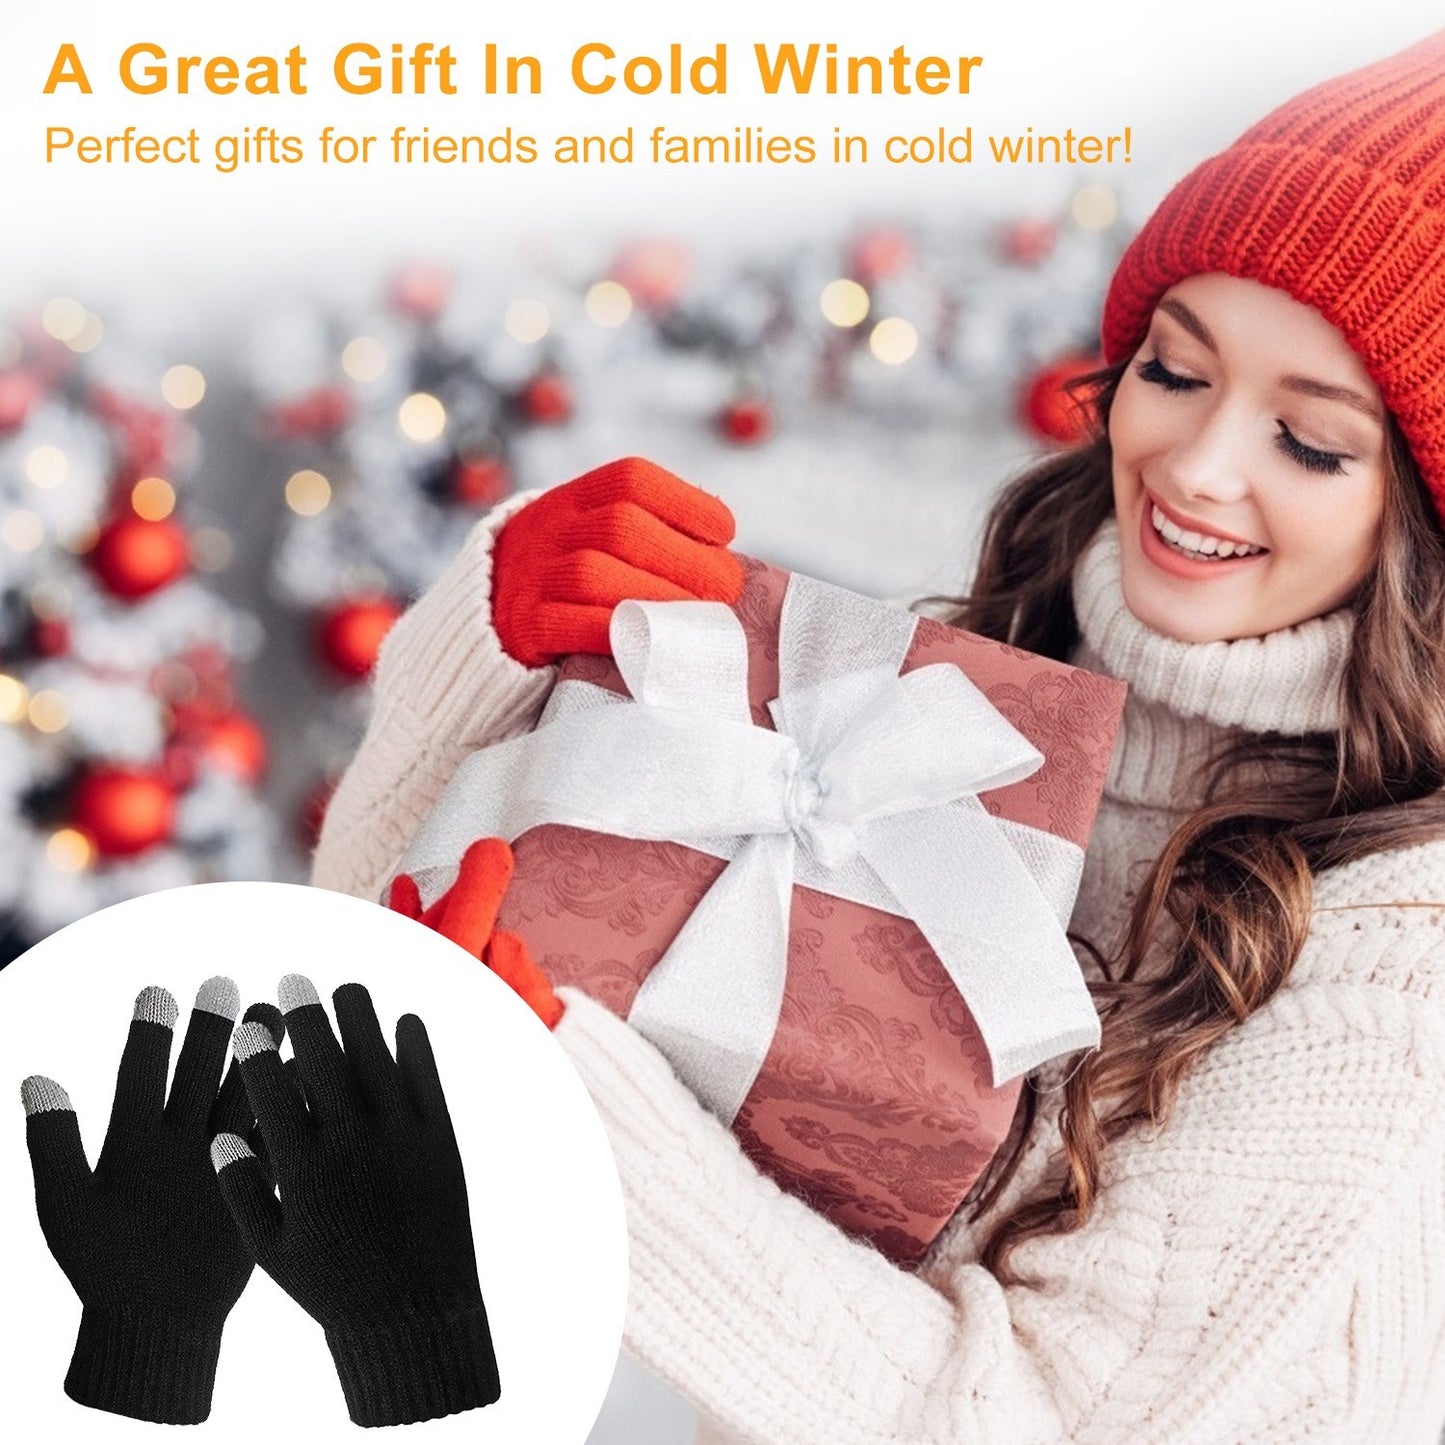 Unisex Touch Screen Gloves Full Finger Winter Warm Knitted Gloves